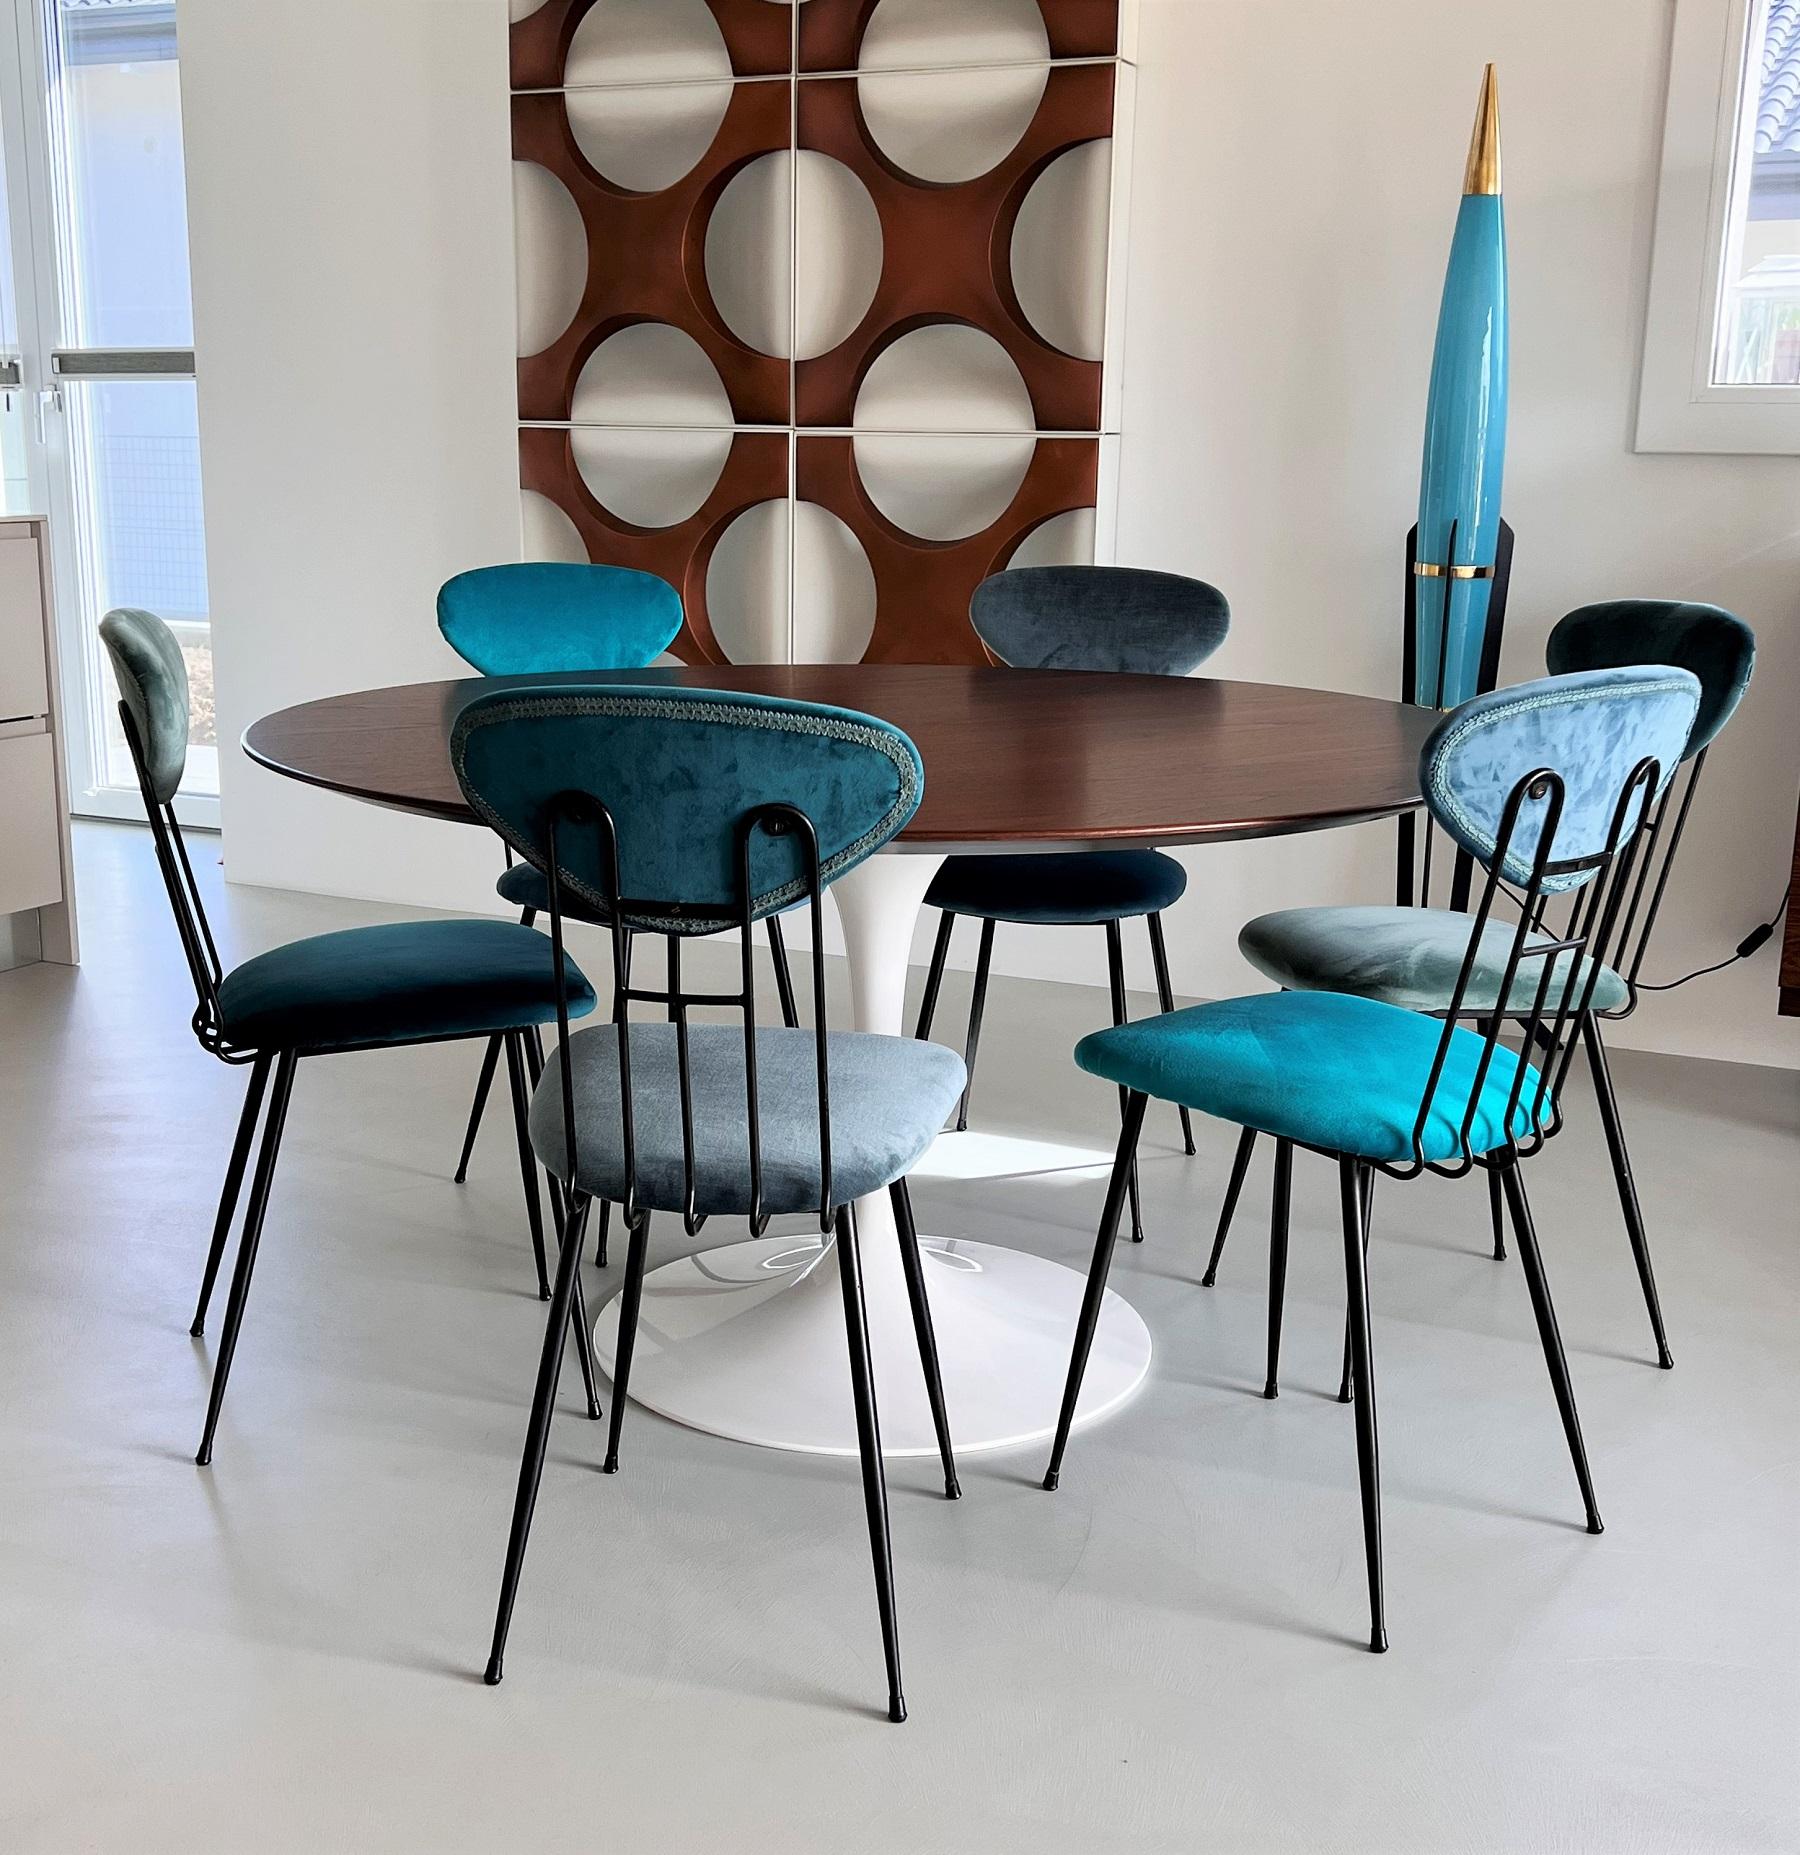 Italian Midcentury Dining Room Chairs Re-Upholstered in Velvet, 1960s For Sale 3